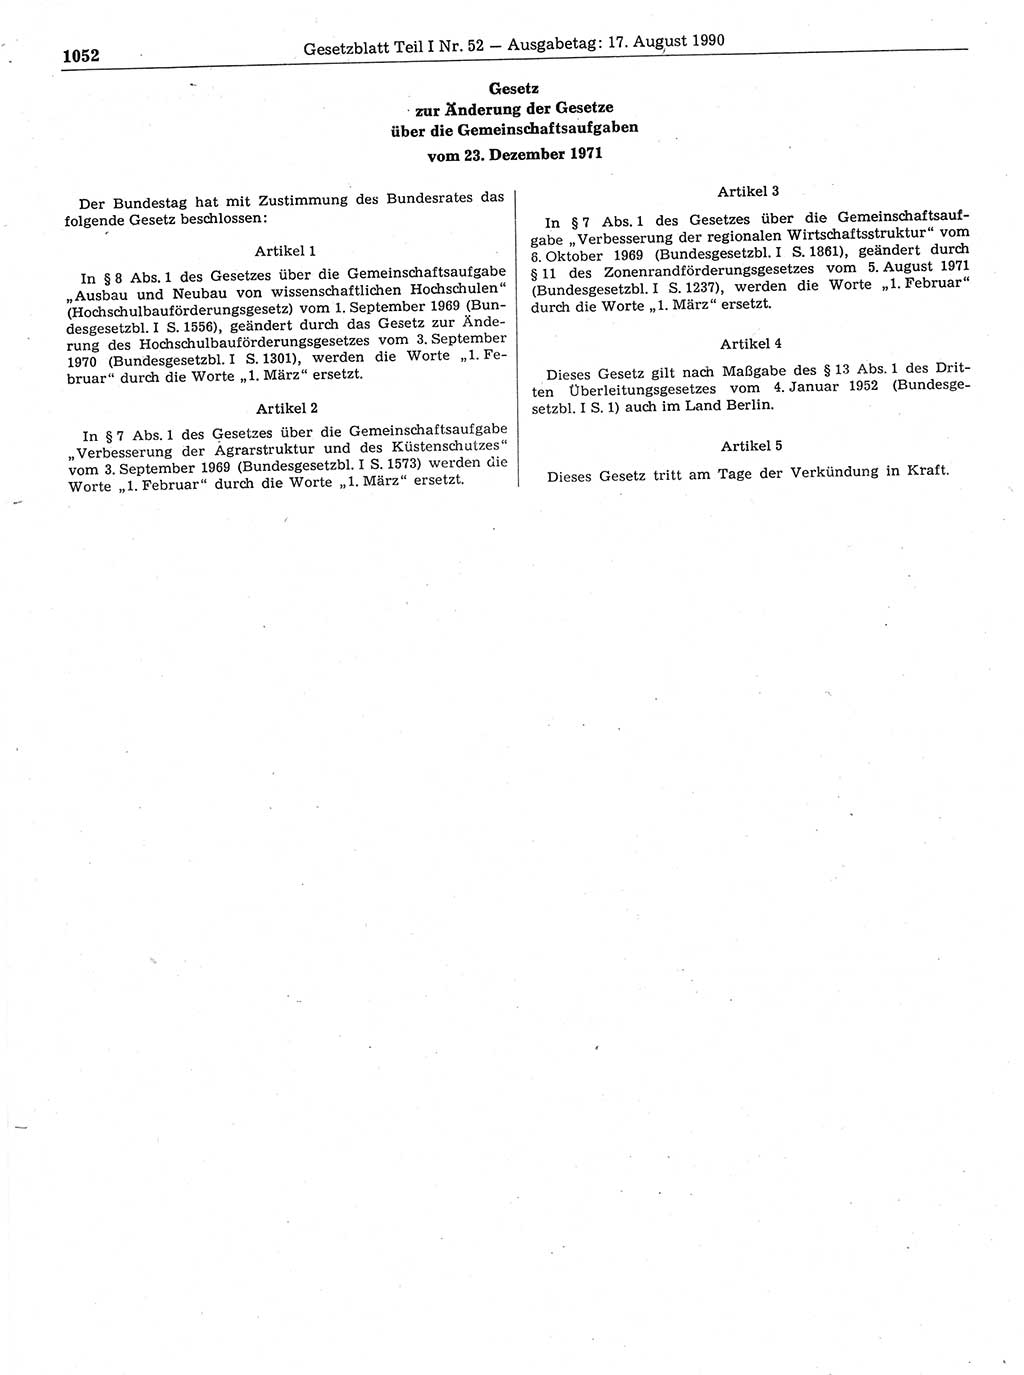 Gesetzblatt (GBl.) der Deutschen Demokratischen Republik (DDR) Teil Ⅰ 1990, Seite 1052 (GBl. DDR Ⅰ 1990, S. 1052)